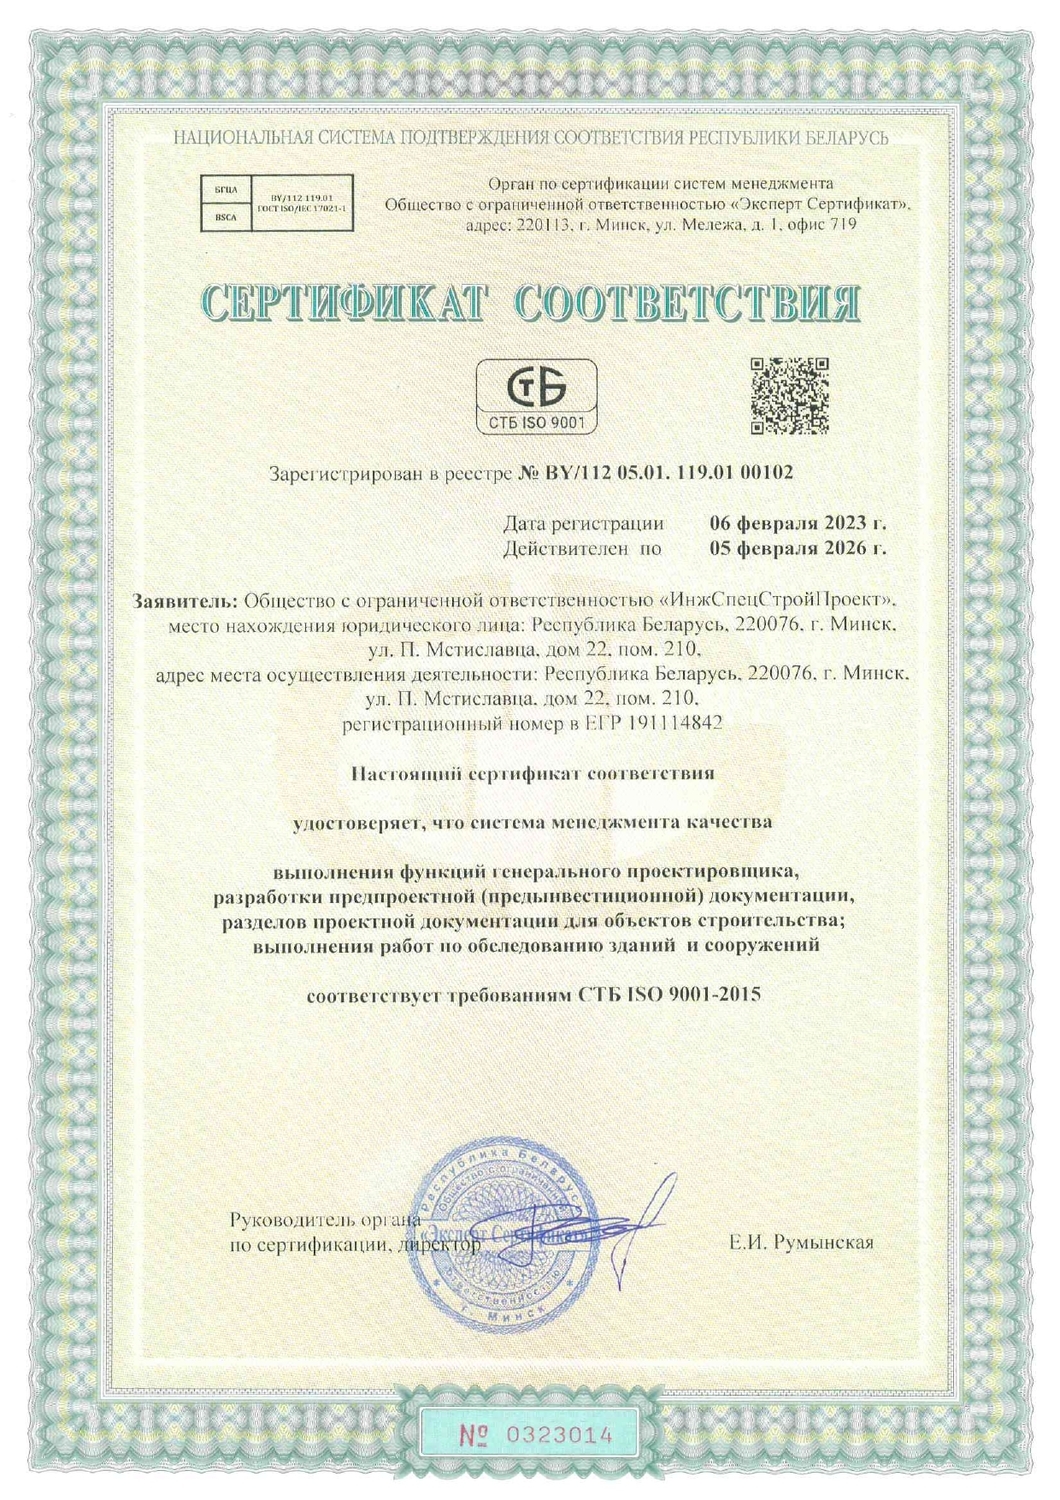 Сертификат внедрения системы менеджмента качества СТБ ISO 9001:2015